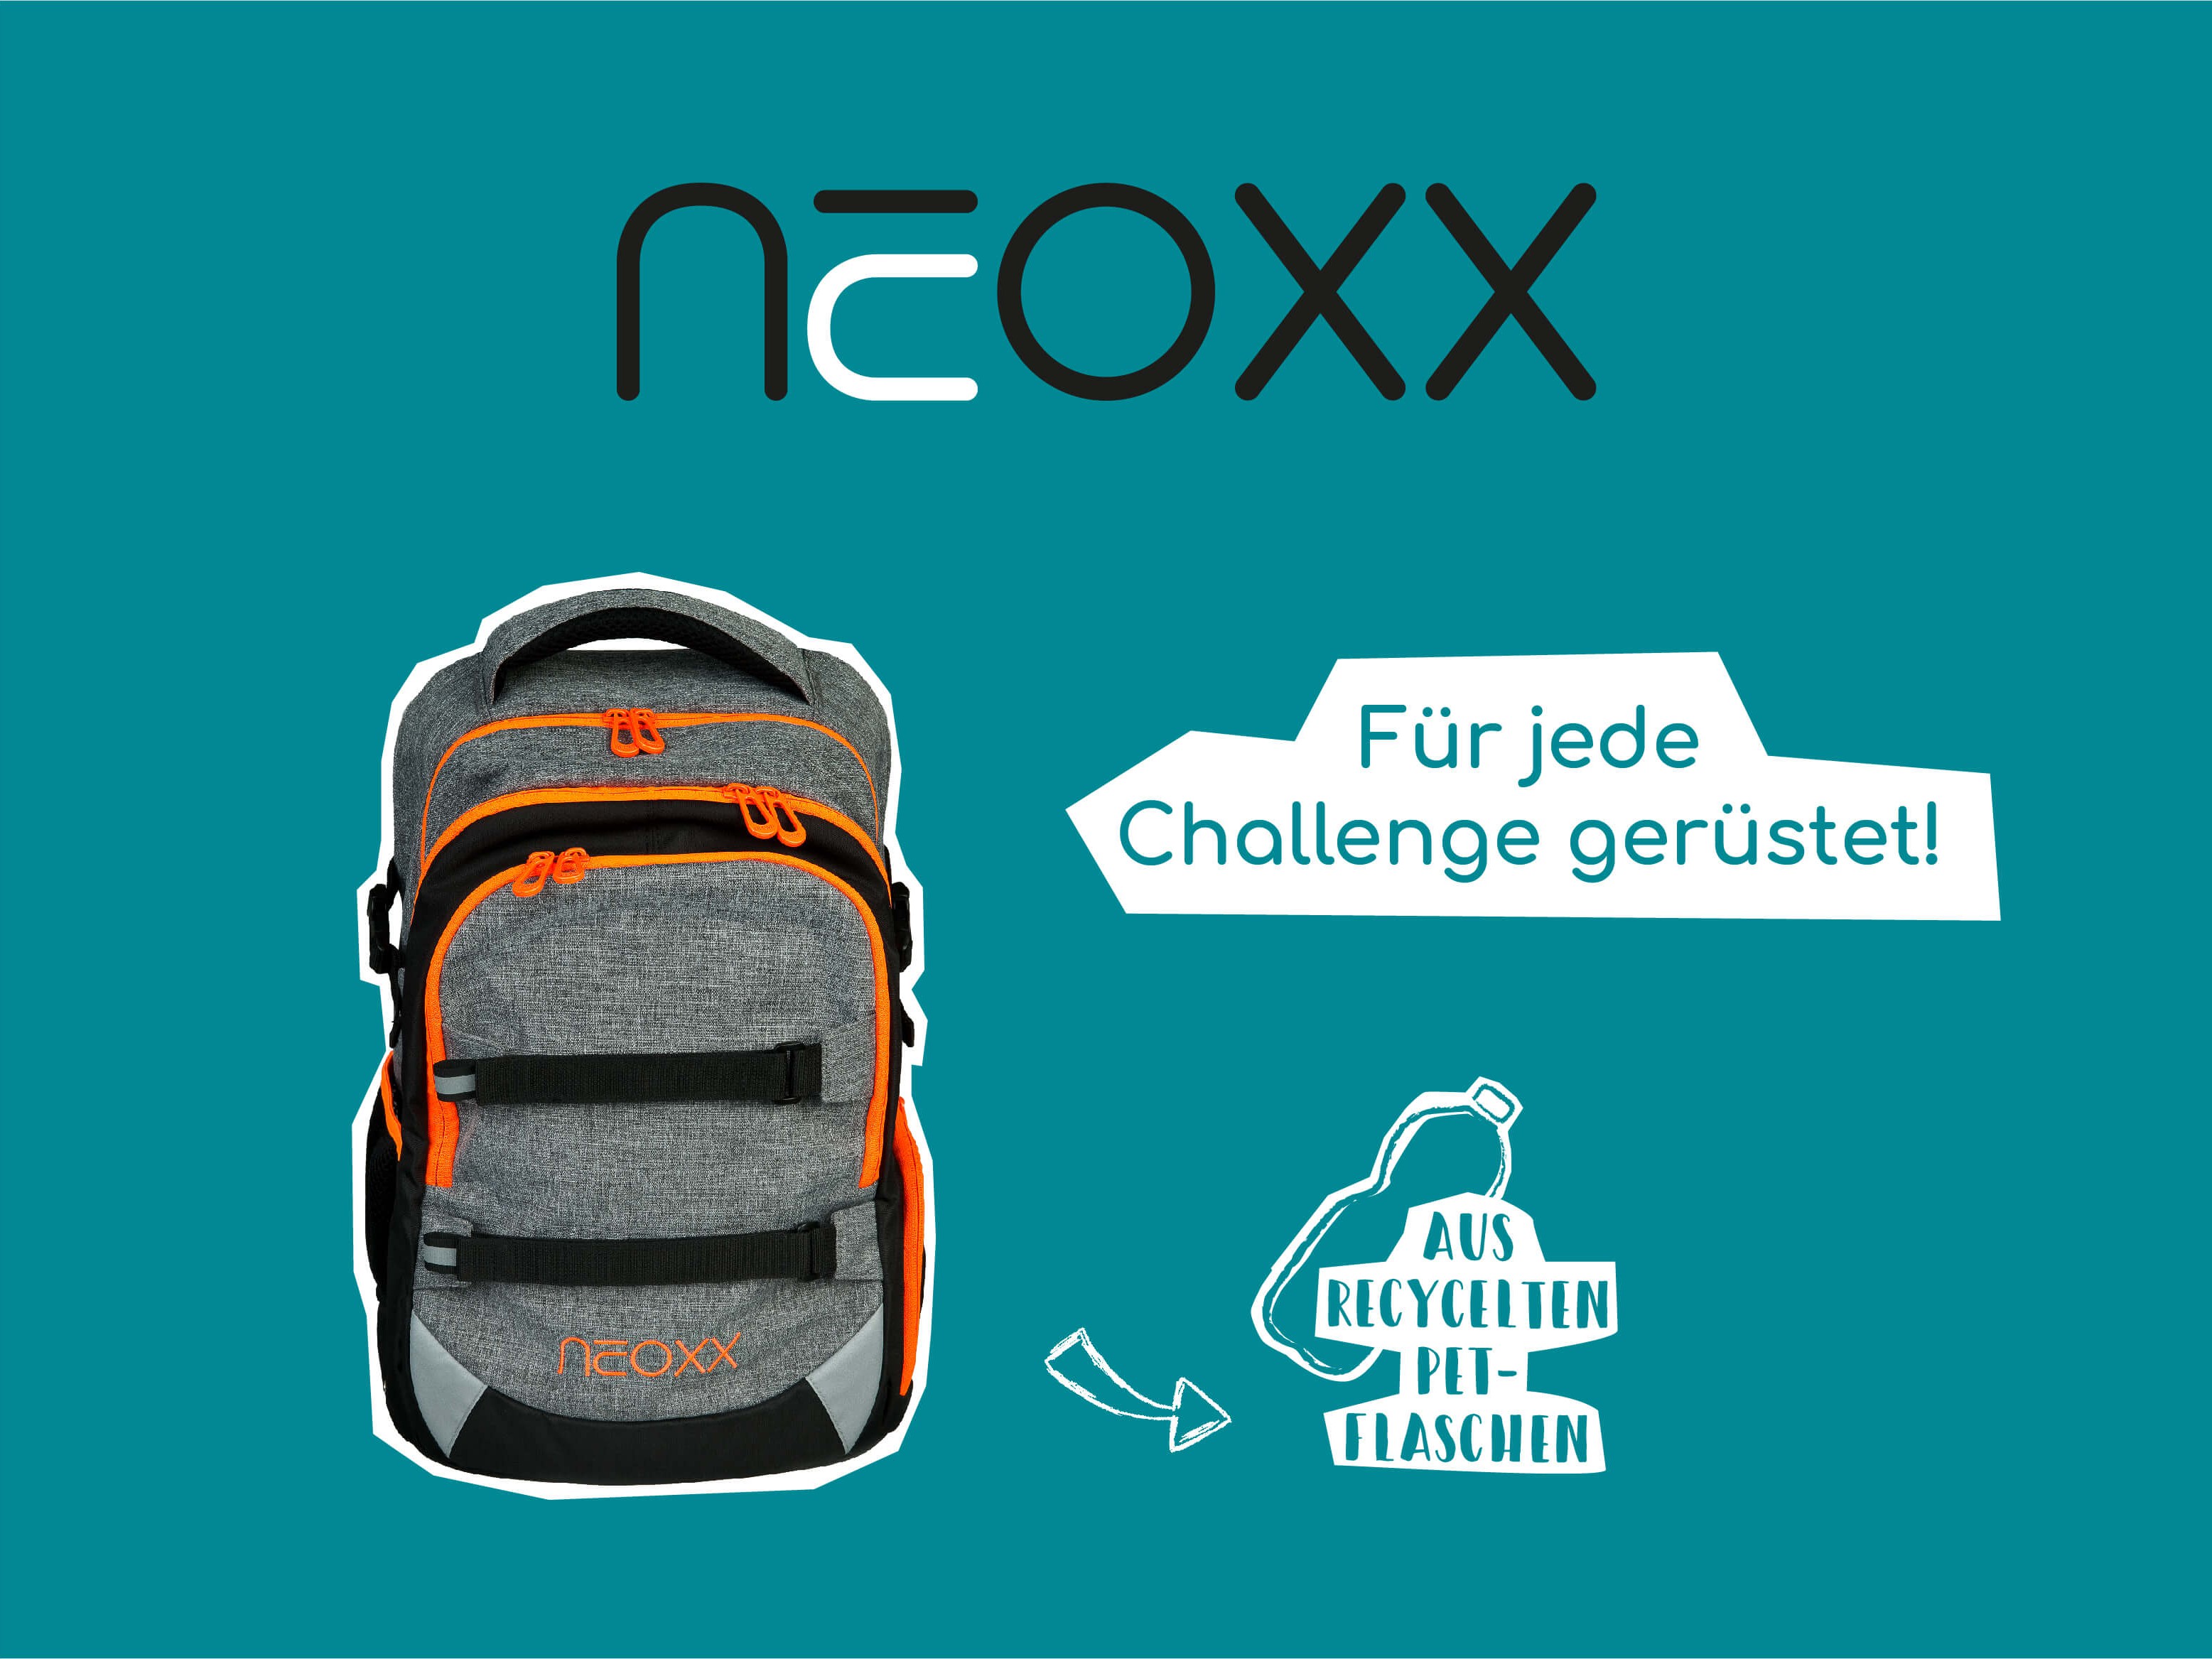 neoxx - Für jede Challenge gerüstet